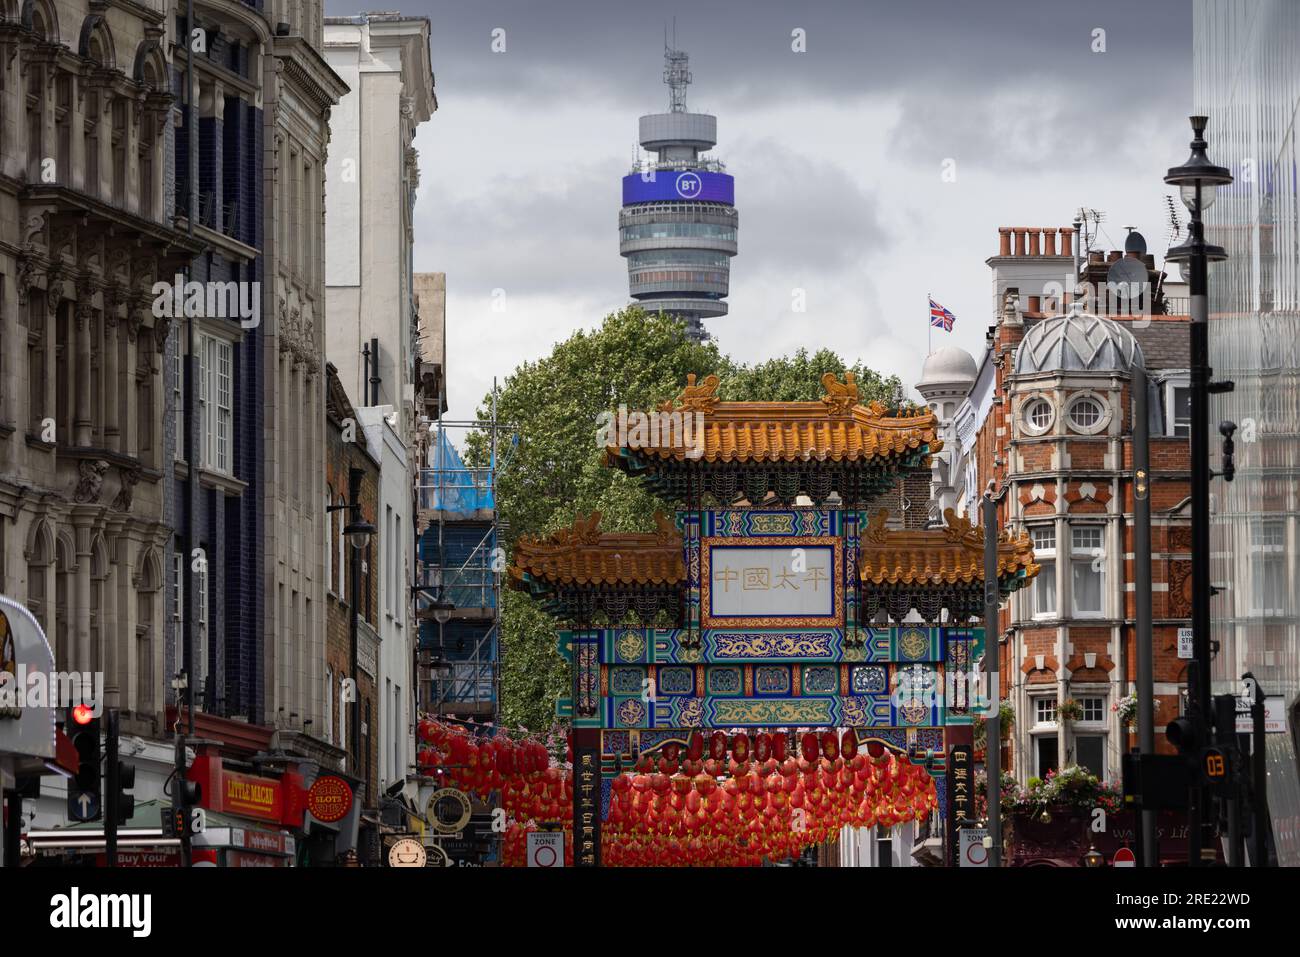 Tour BT vue au loin derrière China Town, centre de Londres, Angleterre, Royaume-Uni Banque D'Images